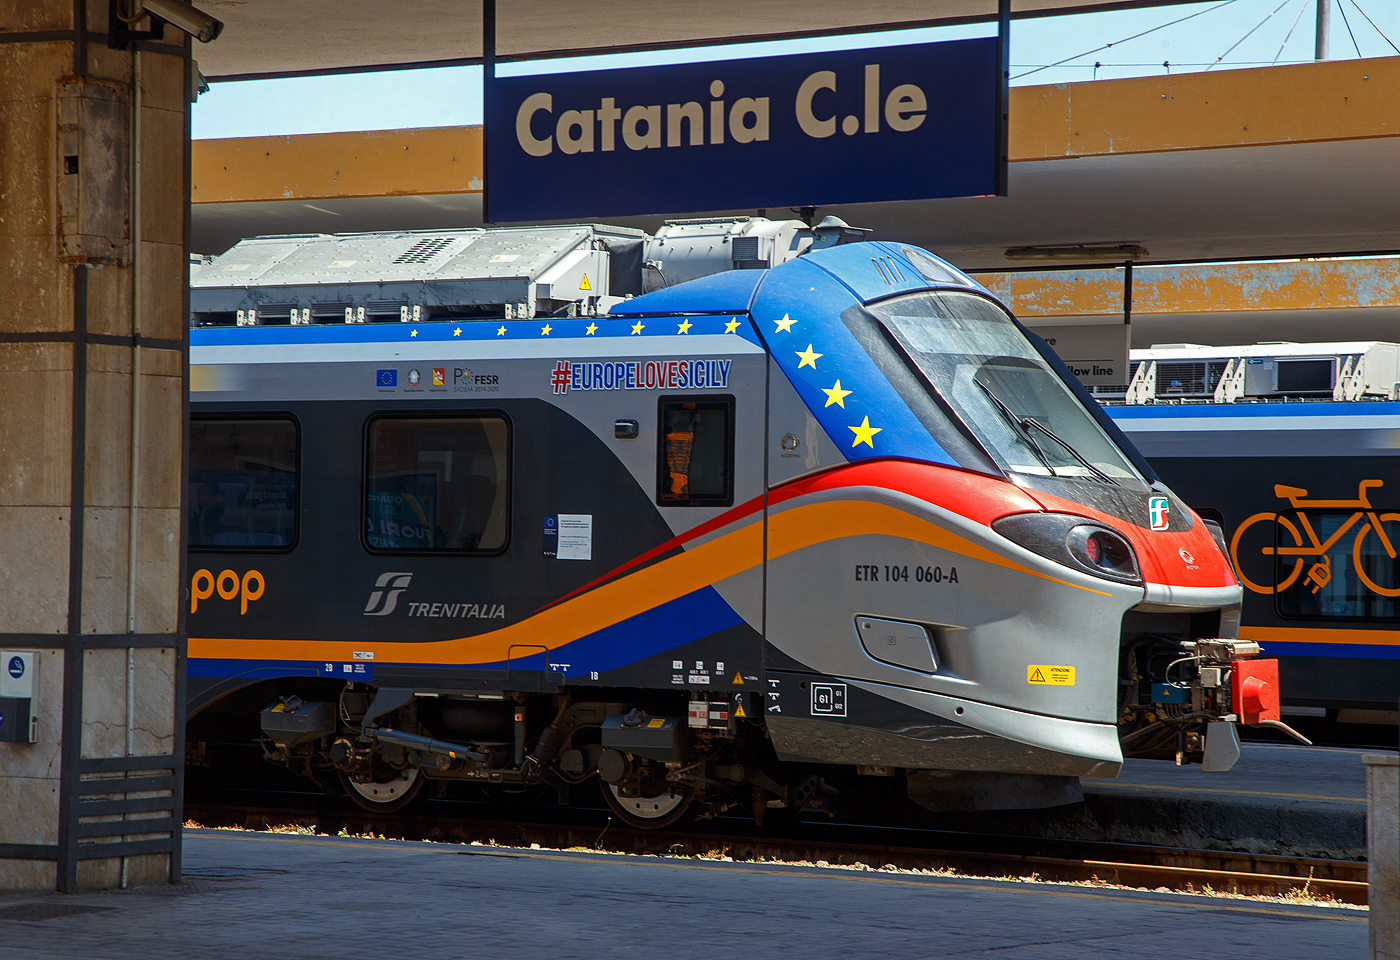 Detailbild von dem Trenitalia „pop“ ETR 104 060, ein vierteiliger Alstom Coradia Stream, am 17.07.2022 im Bahnhof Catania Centrale.